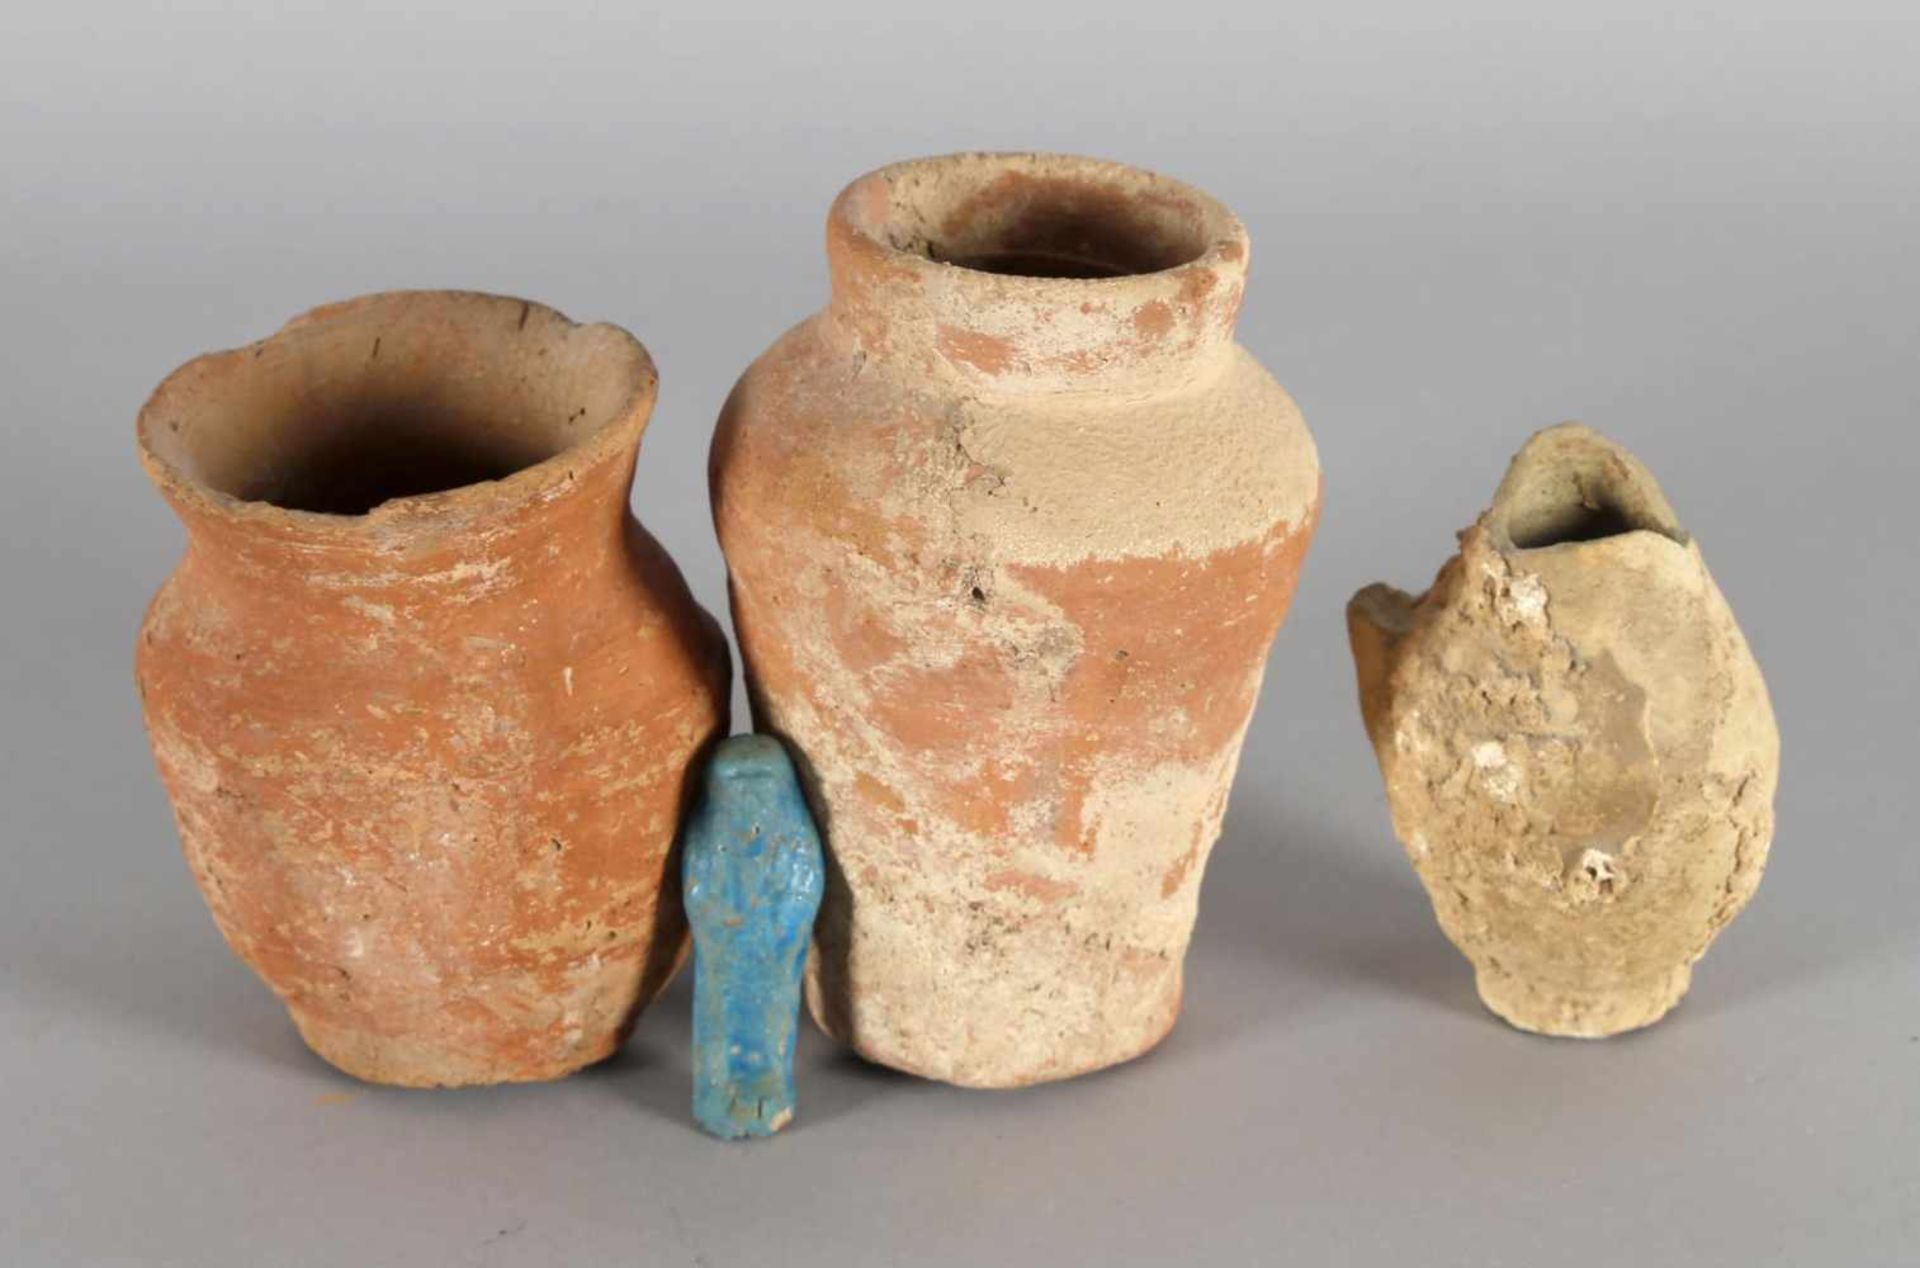 Konvolut kleiner, wohl antiker bronzezeitlicher Gegenstände aus Keramik/Ton- 2 dickwandige Gefäße